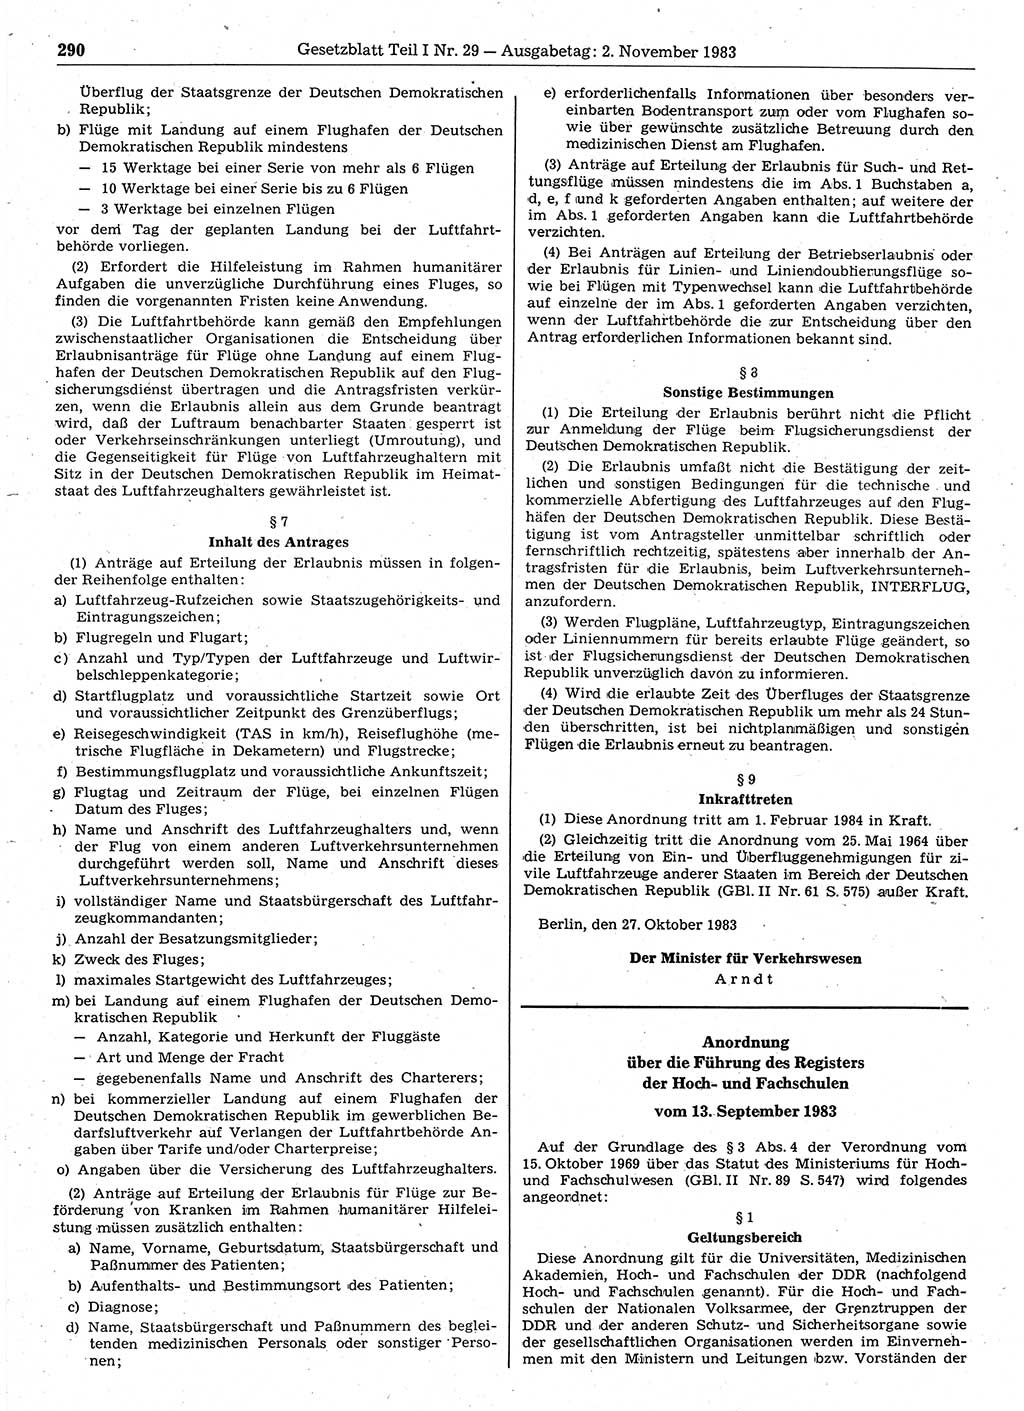 Gesetzblatt (GBl.) der Deutschen Demokratischen Republik (DDR) Teil Ⅰ 1983, Seite 290 (GBl. DDR Ⅰ 1983, S. 290)